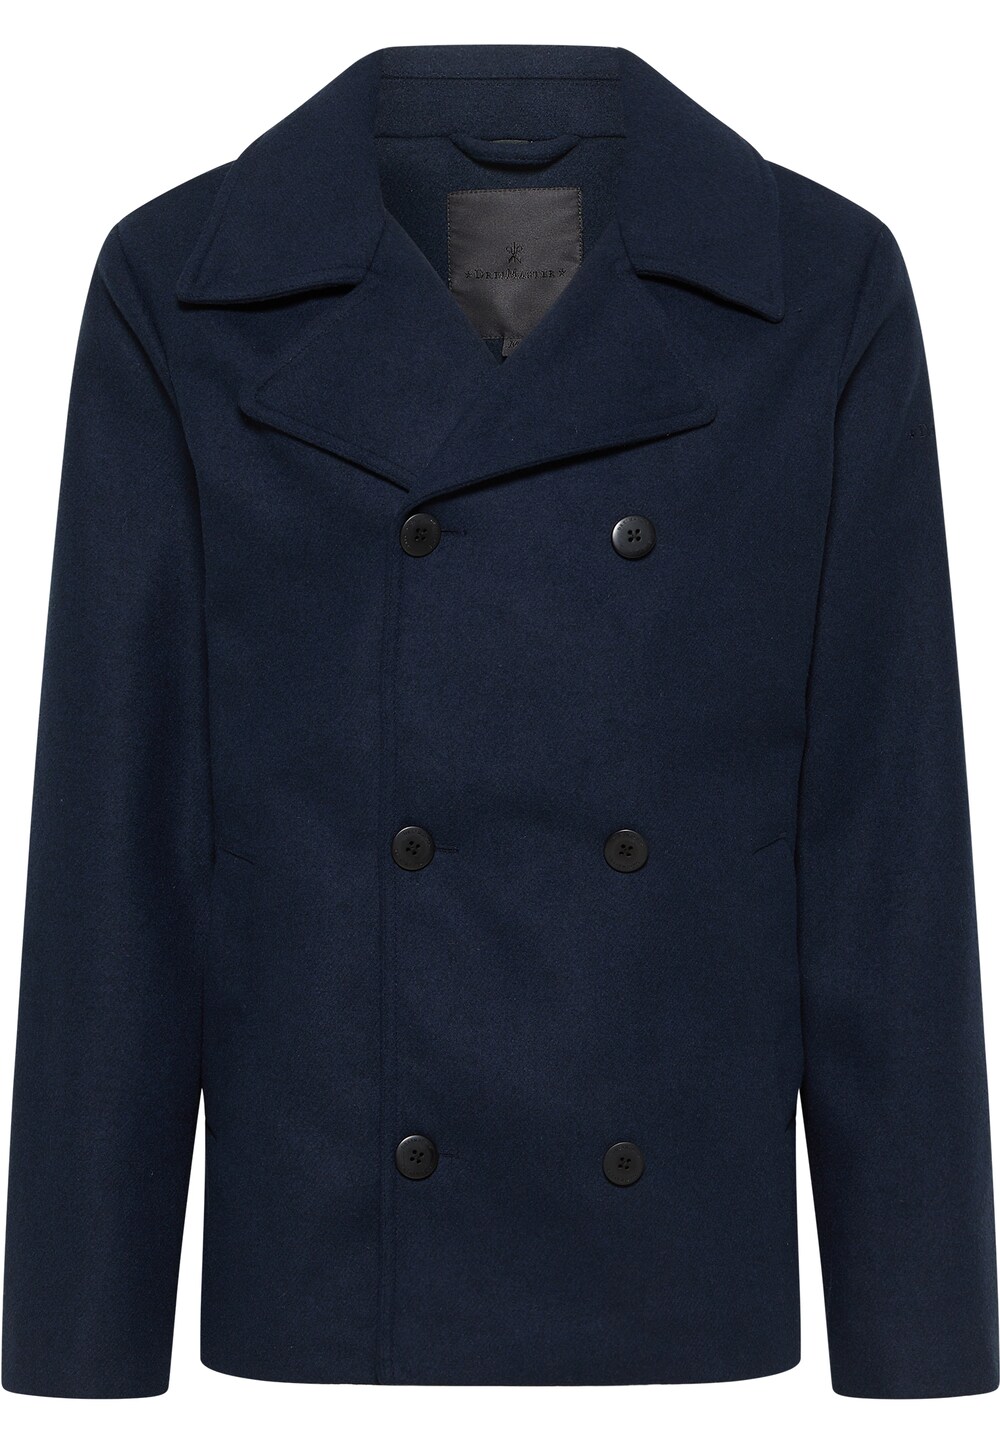 Межсезонное пальто DreiMaster Klassik, ночной синий межсезонное пальто dreimaster klassik ночной синий